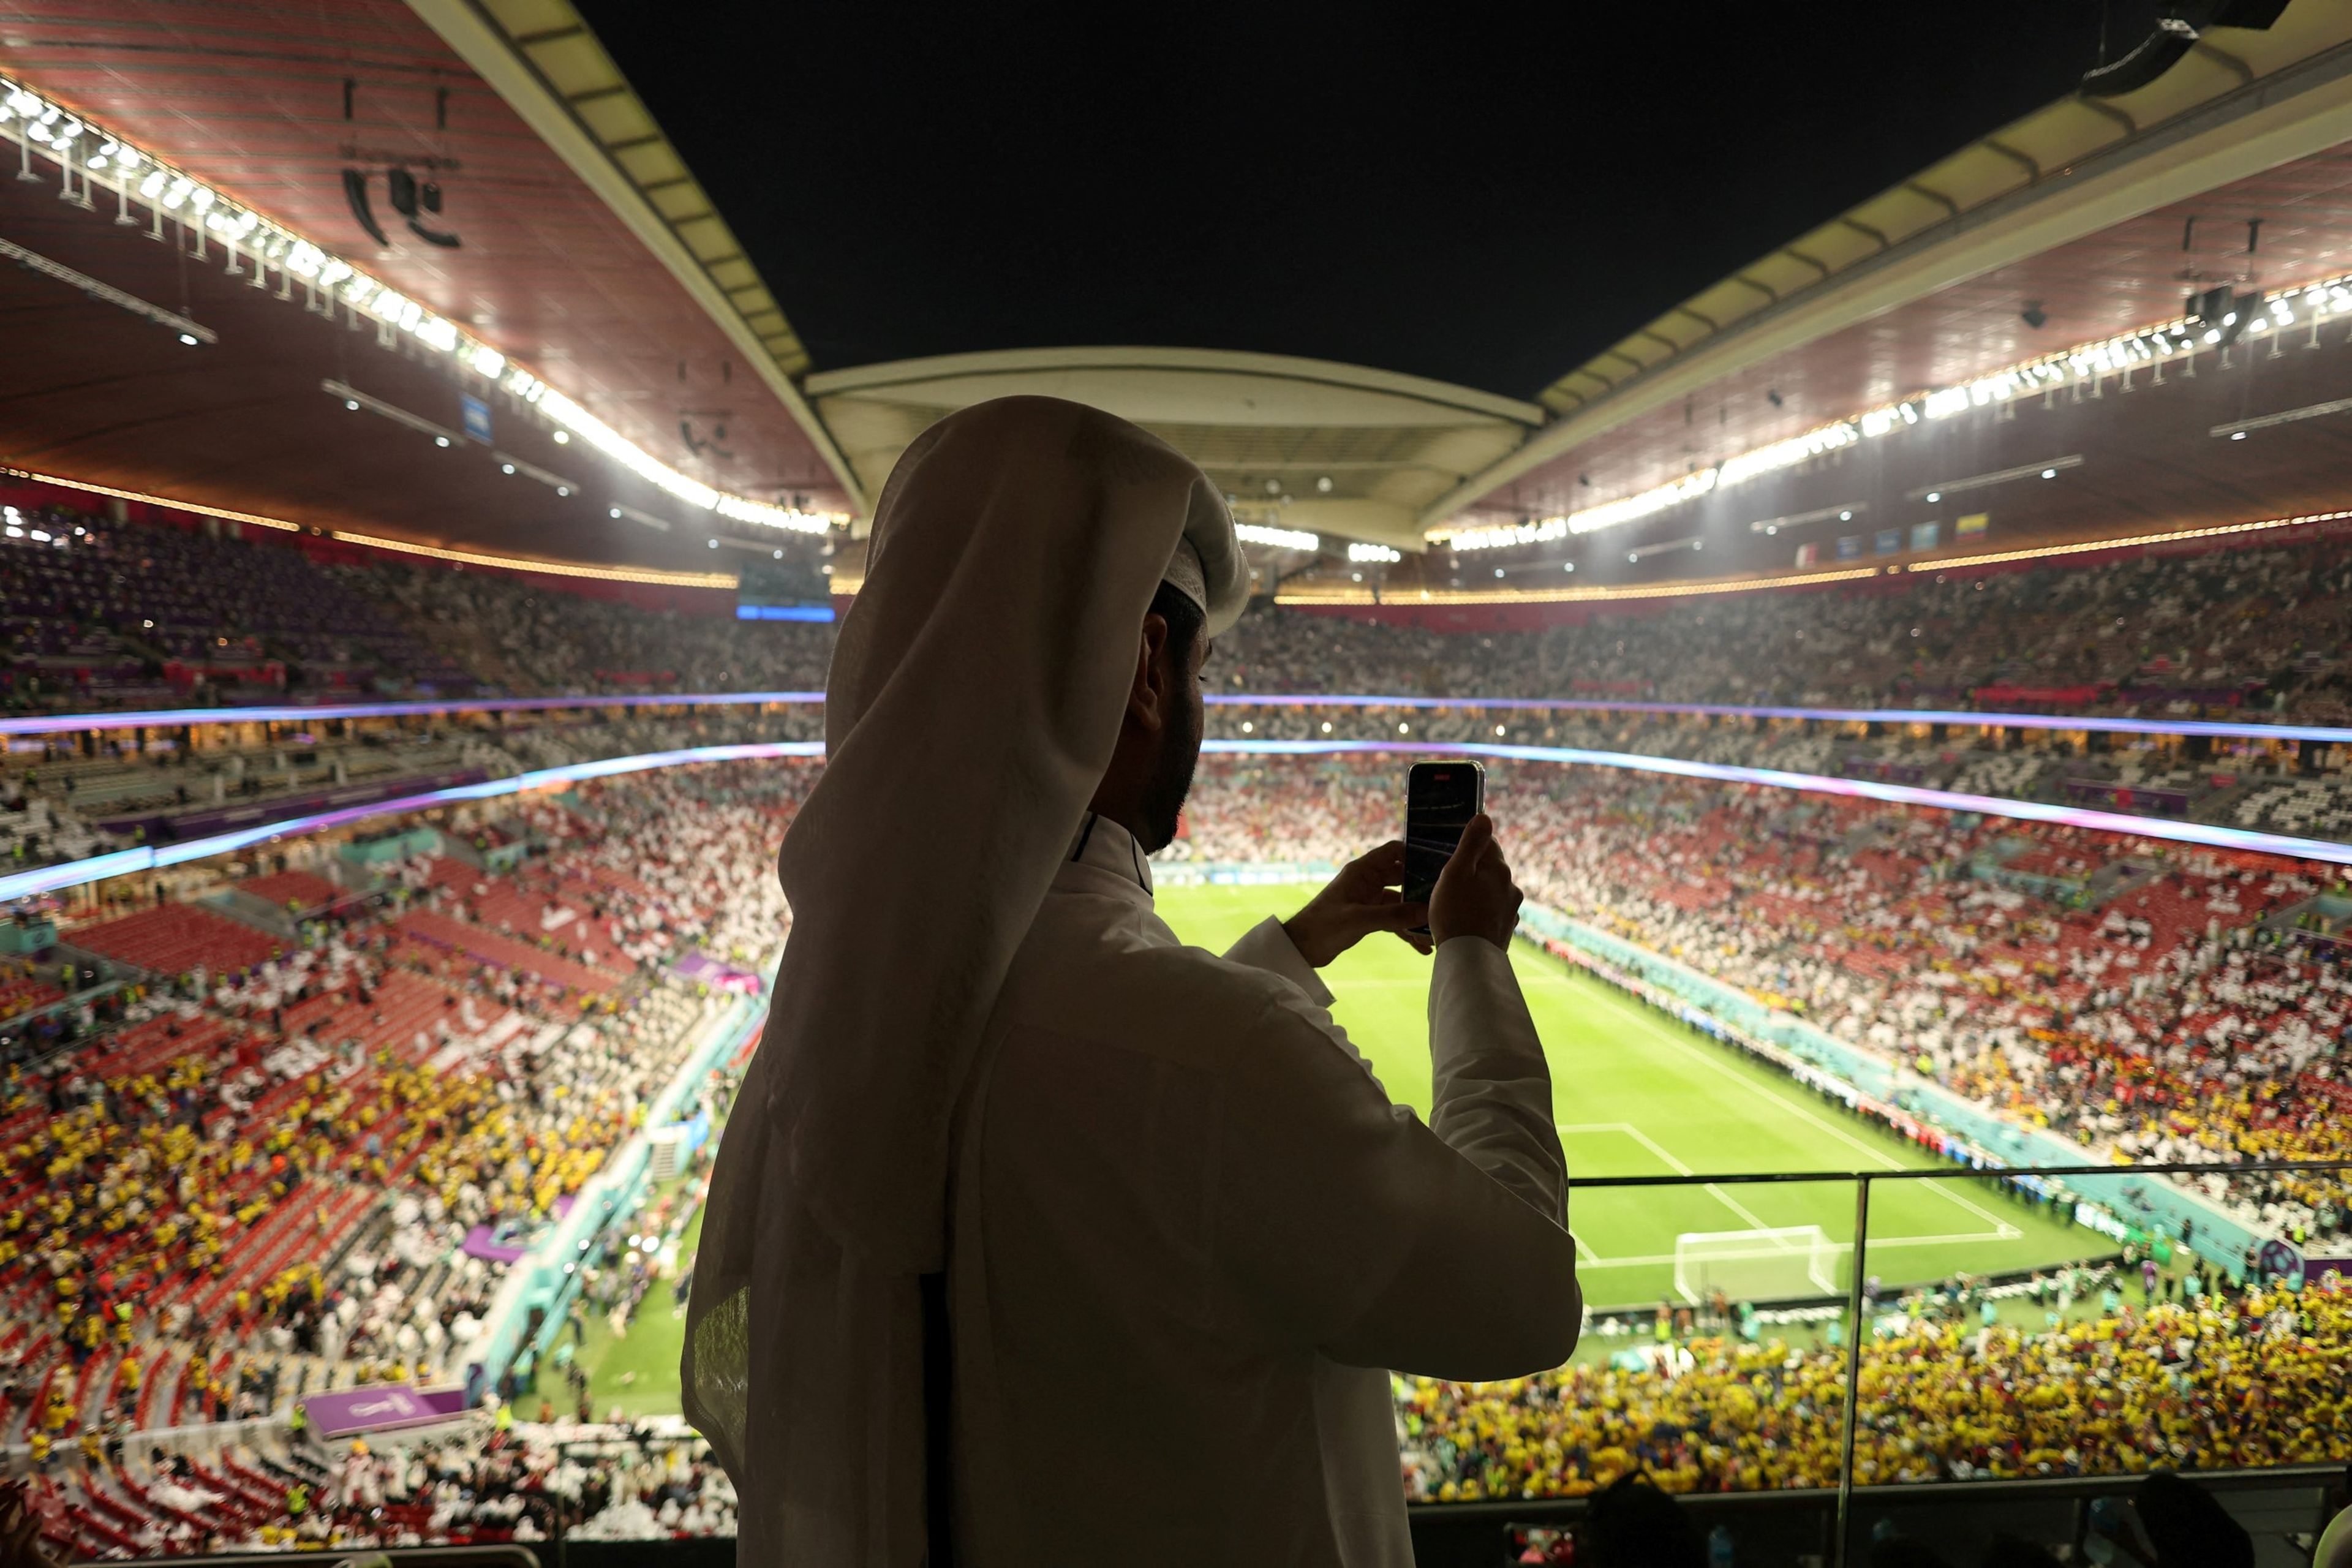 Qatar 2022 ya está en marcha: el Mundial de fútbol comenzó este domingo con derrota del equipo local. España debutará el miércoles frente a Costa Rica.